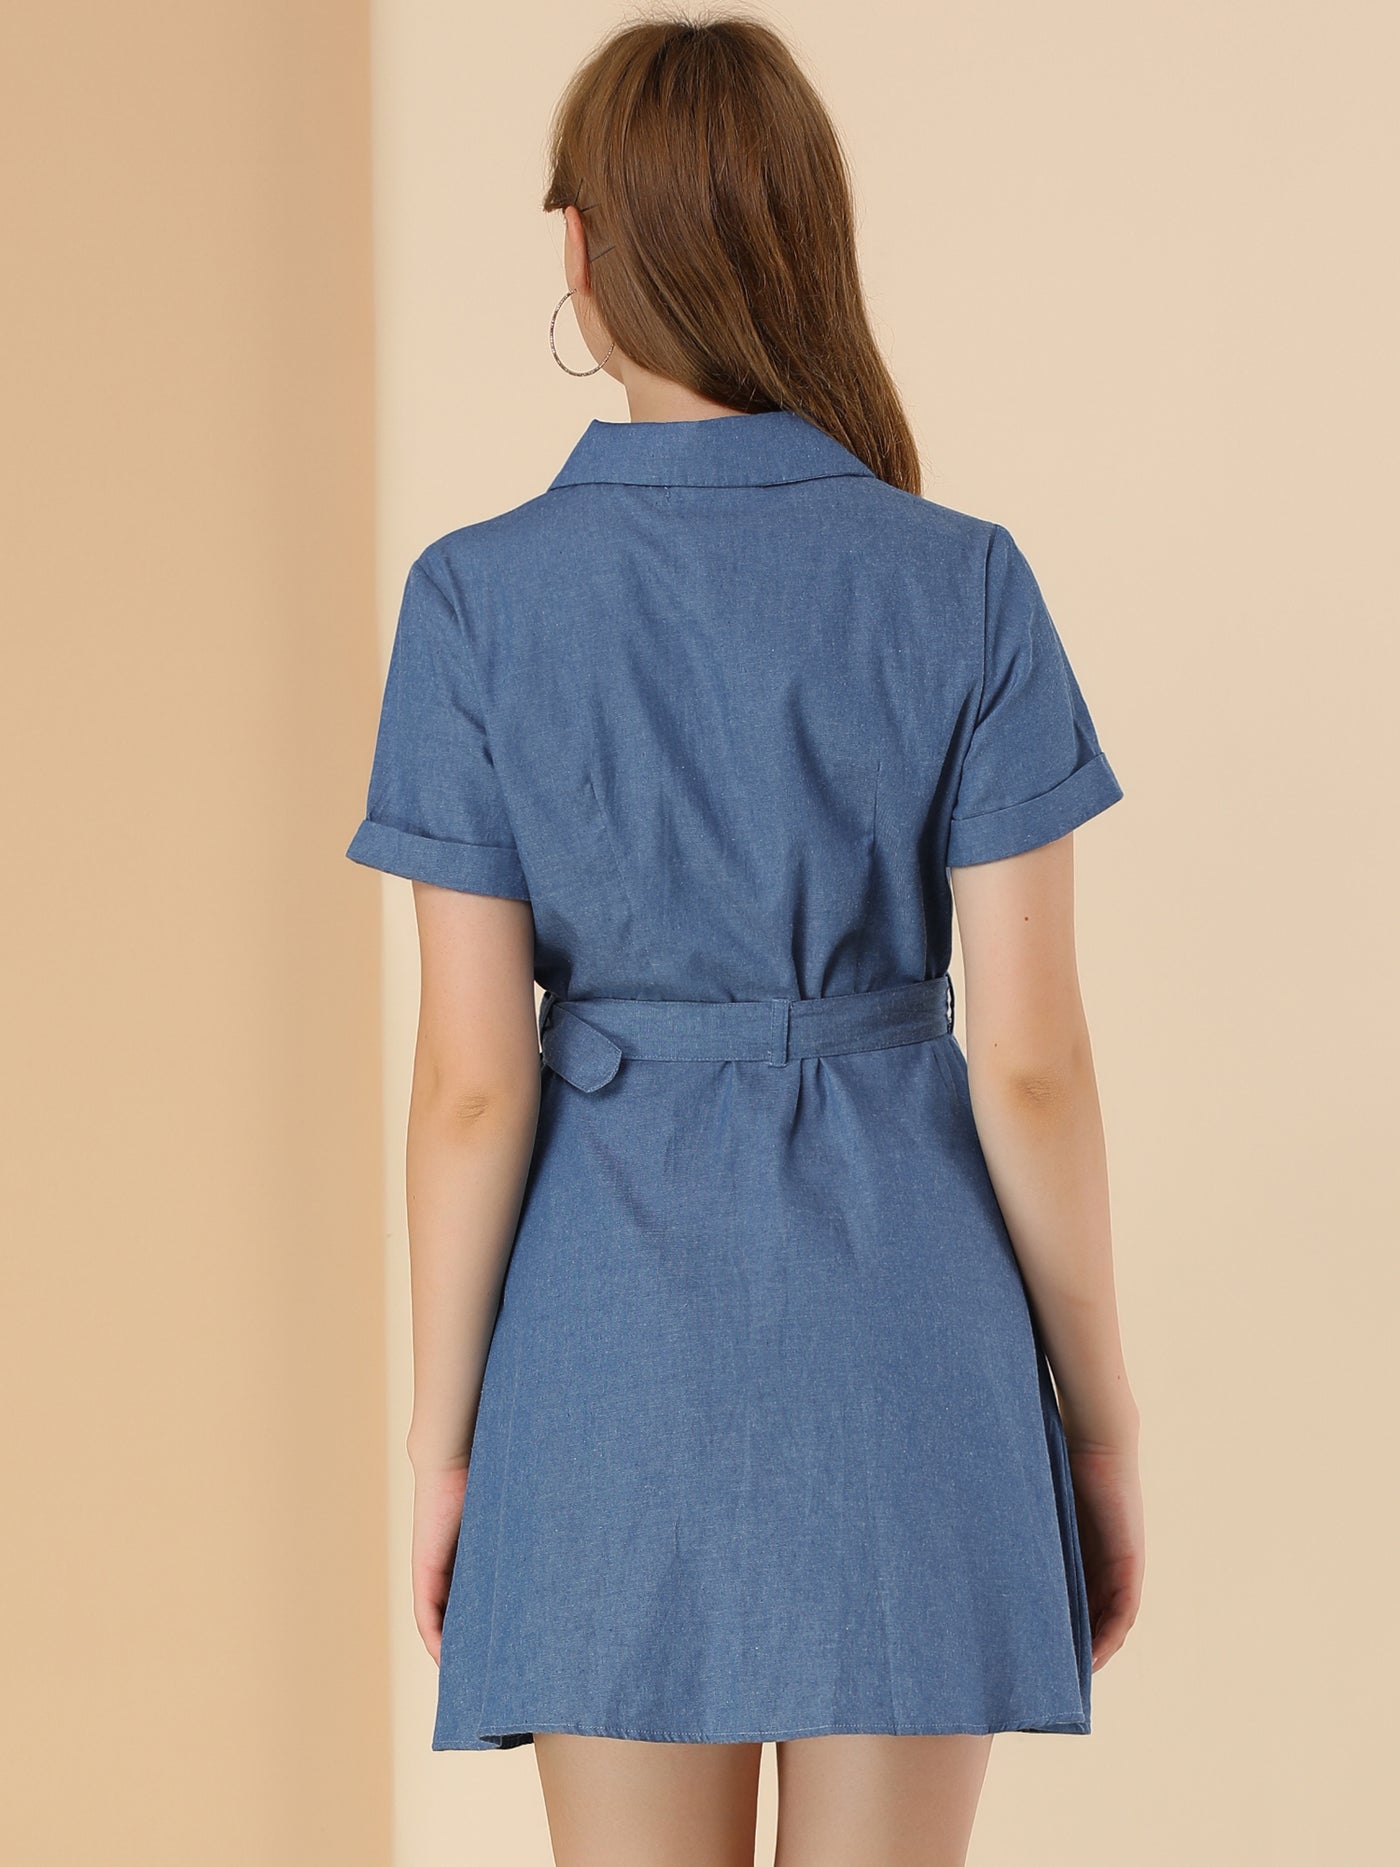 Allegra K Short Sleeve Zipper Front Belt Cotton Pocket Denim Dress